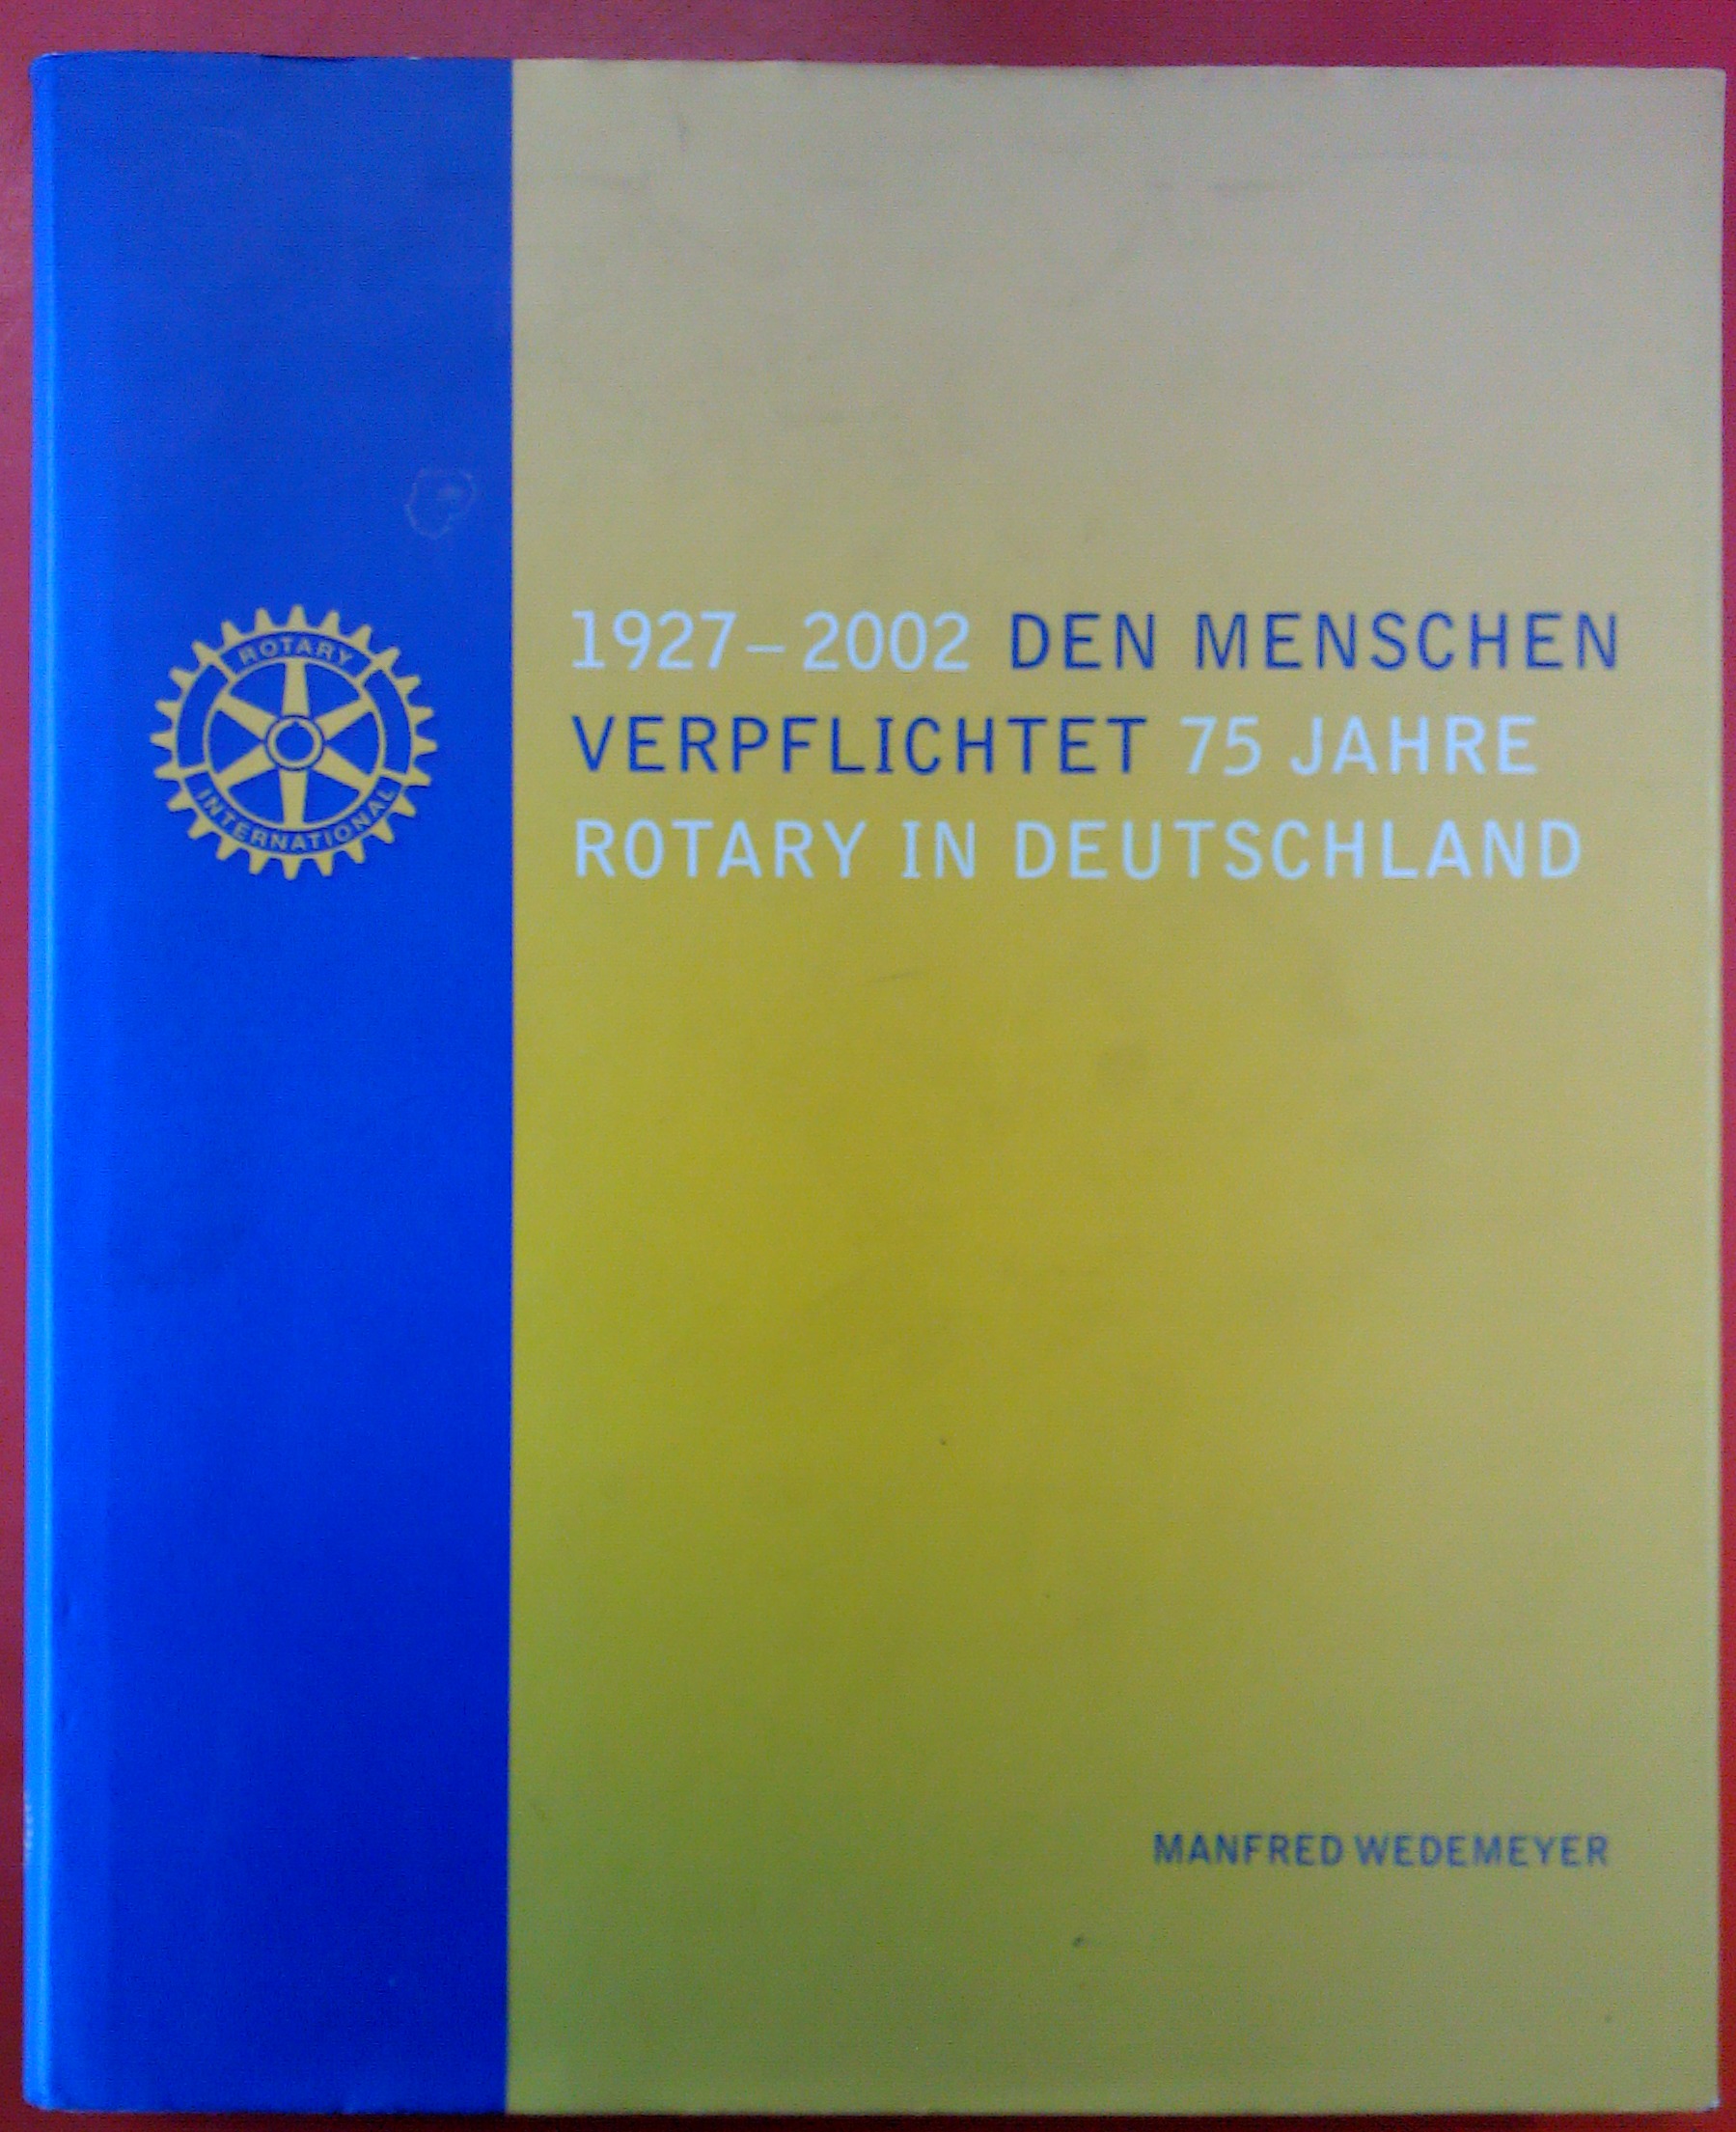 Den Menschen verpflichtet, 75 Jahre Rotary in Deutschland 1927-2002 - Manfred Wedemeyer